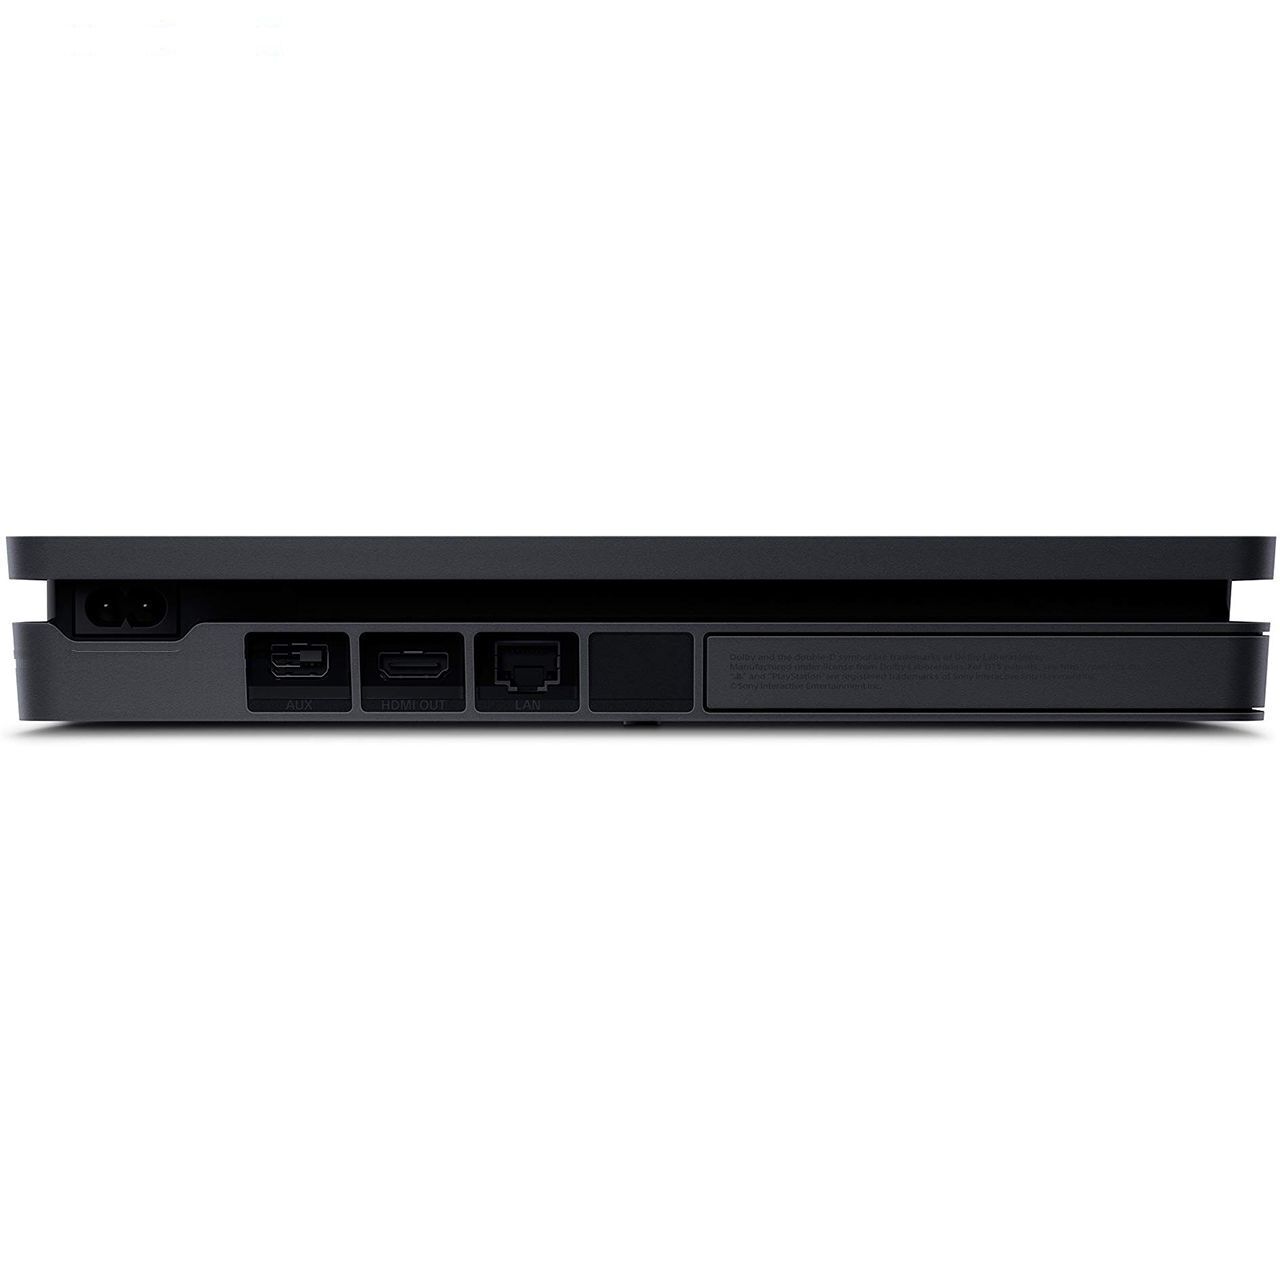 کنسول بازی سونی مدل Playstation 4 Slim کد Region 2 CUH-2216A – ظرفیت 500 گیگابایت